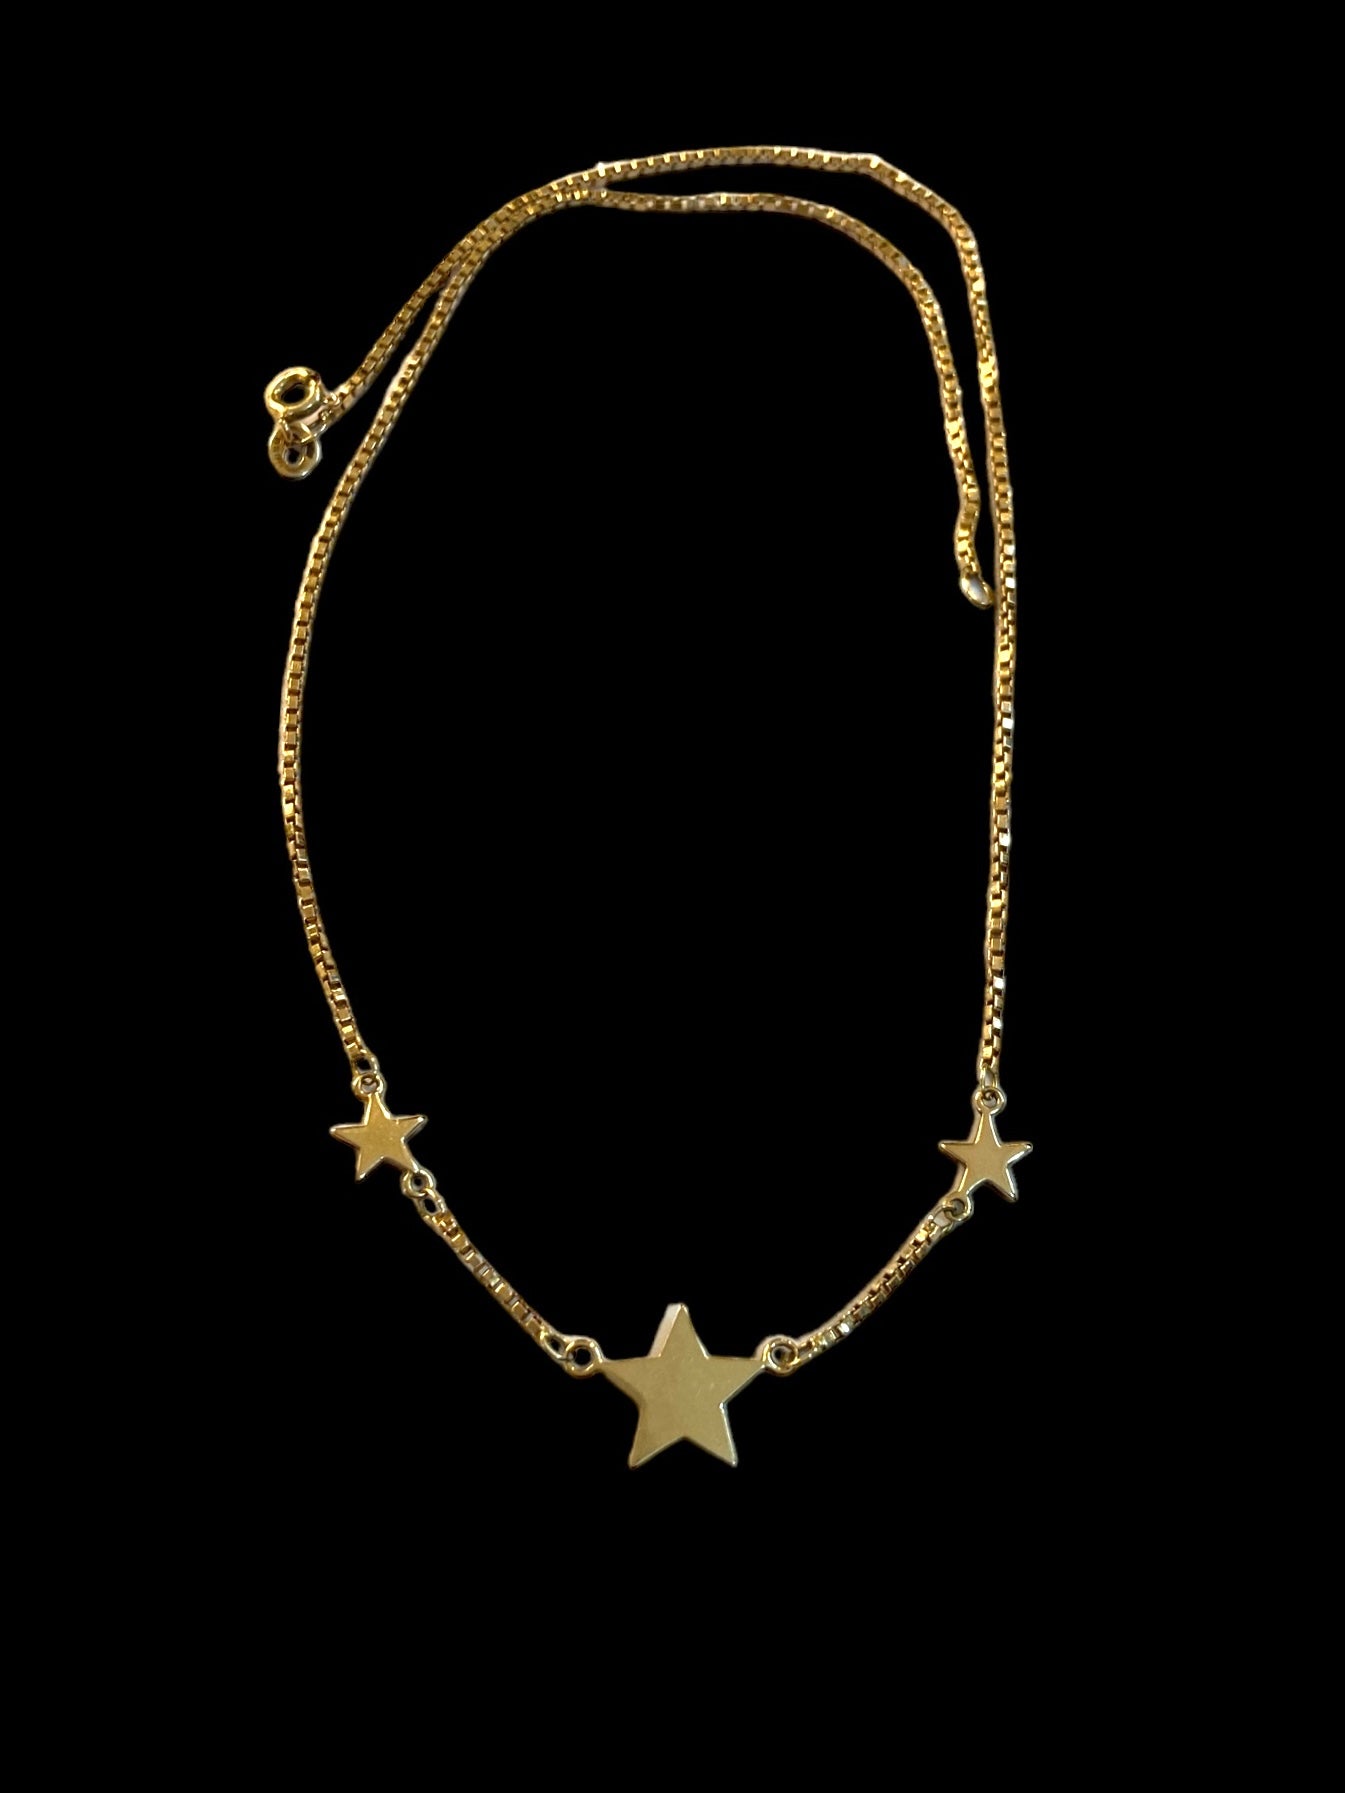 9ct vintage star necklace circa 1978 40cm long